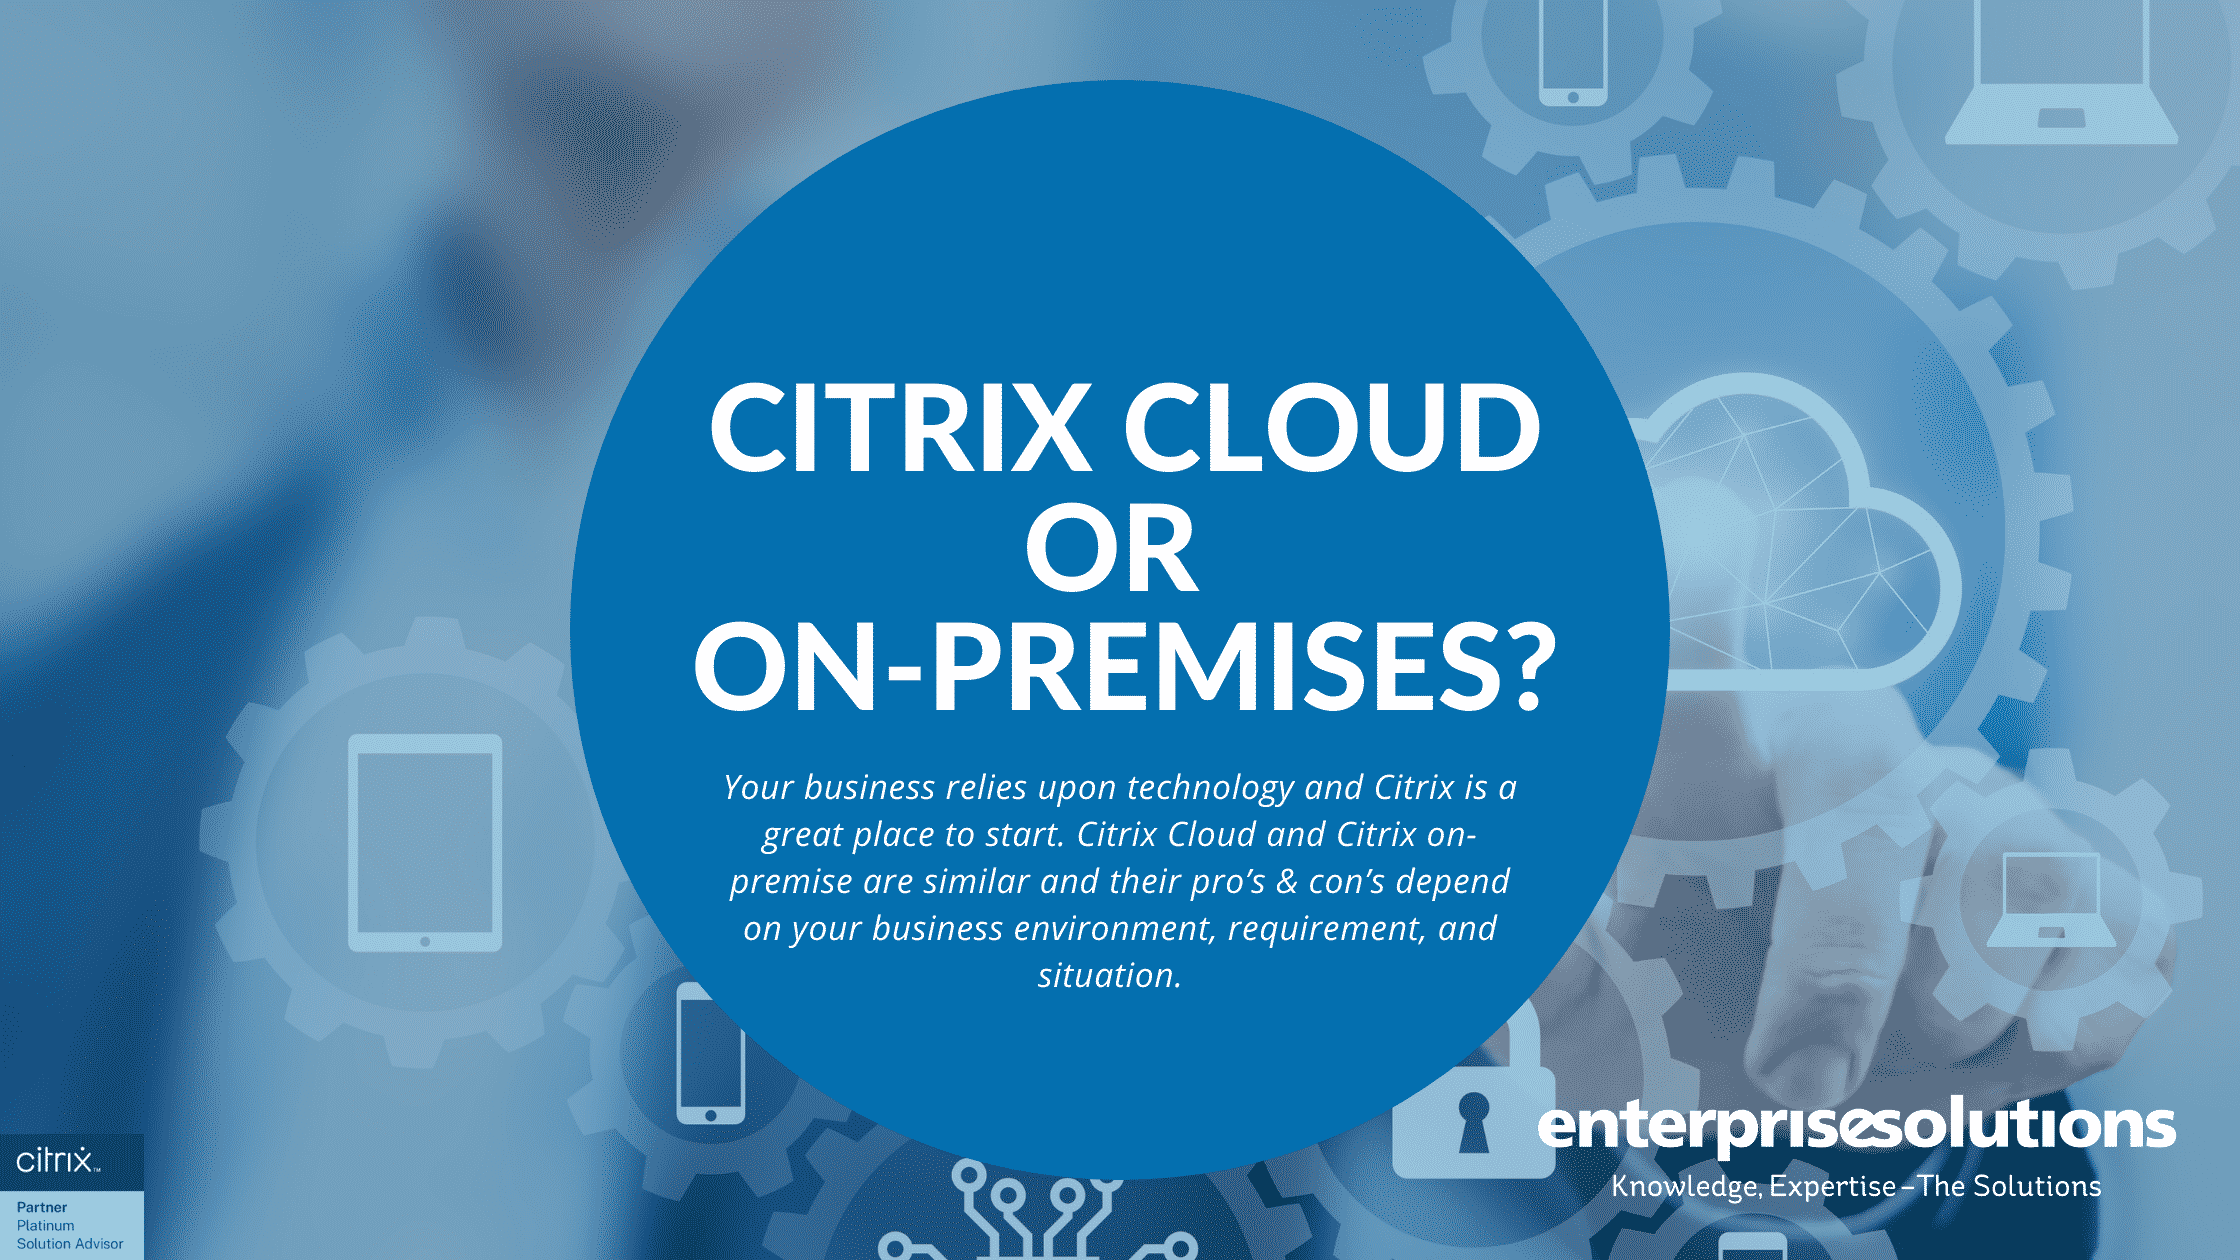 Citrix Cloud or On-Premises?